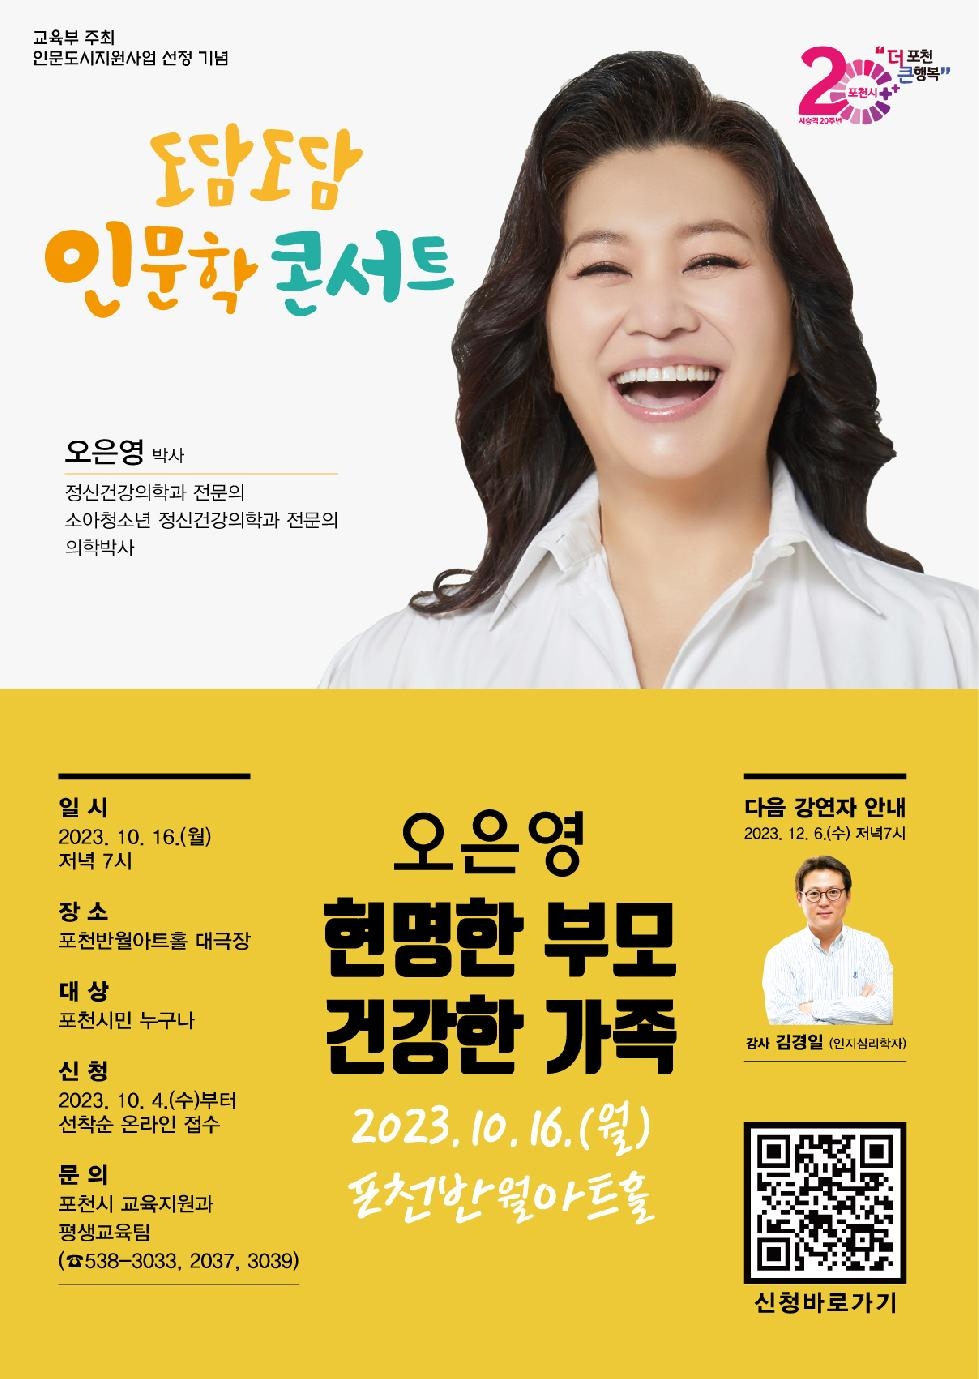 인문도시 포천, 「오은영의 도담도담 인문학 콘서트」개최